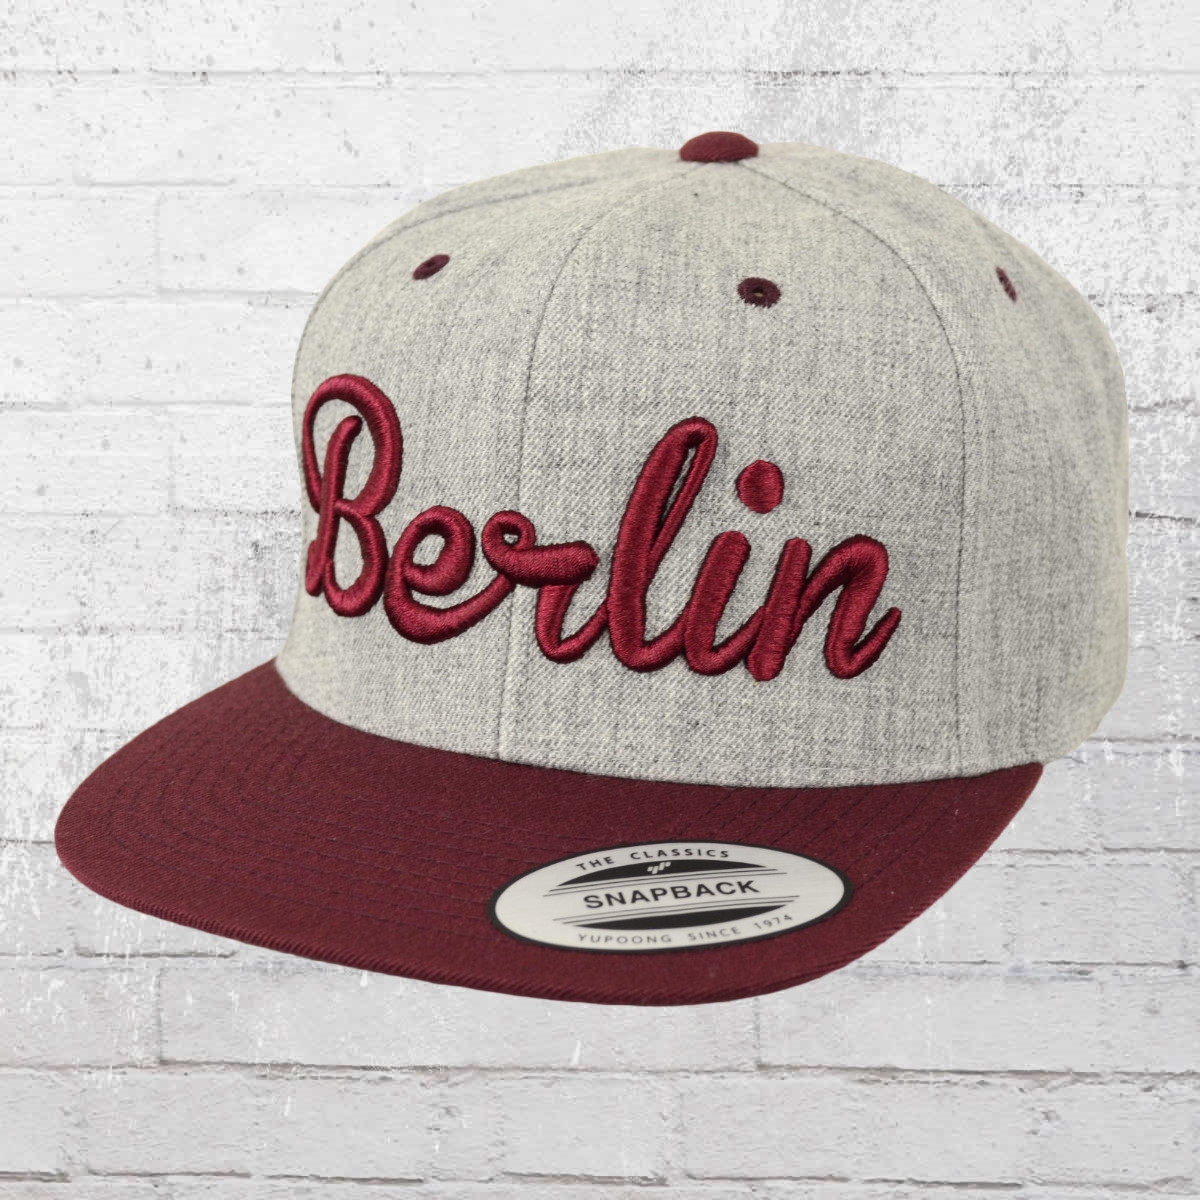 Berlin Snapback Hat grey bordeaux 